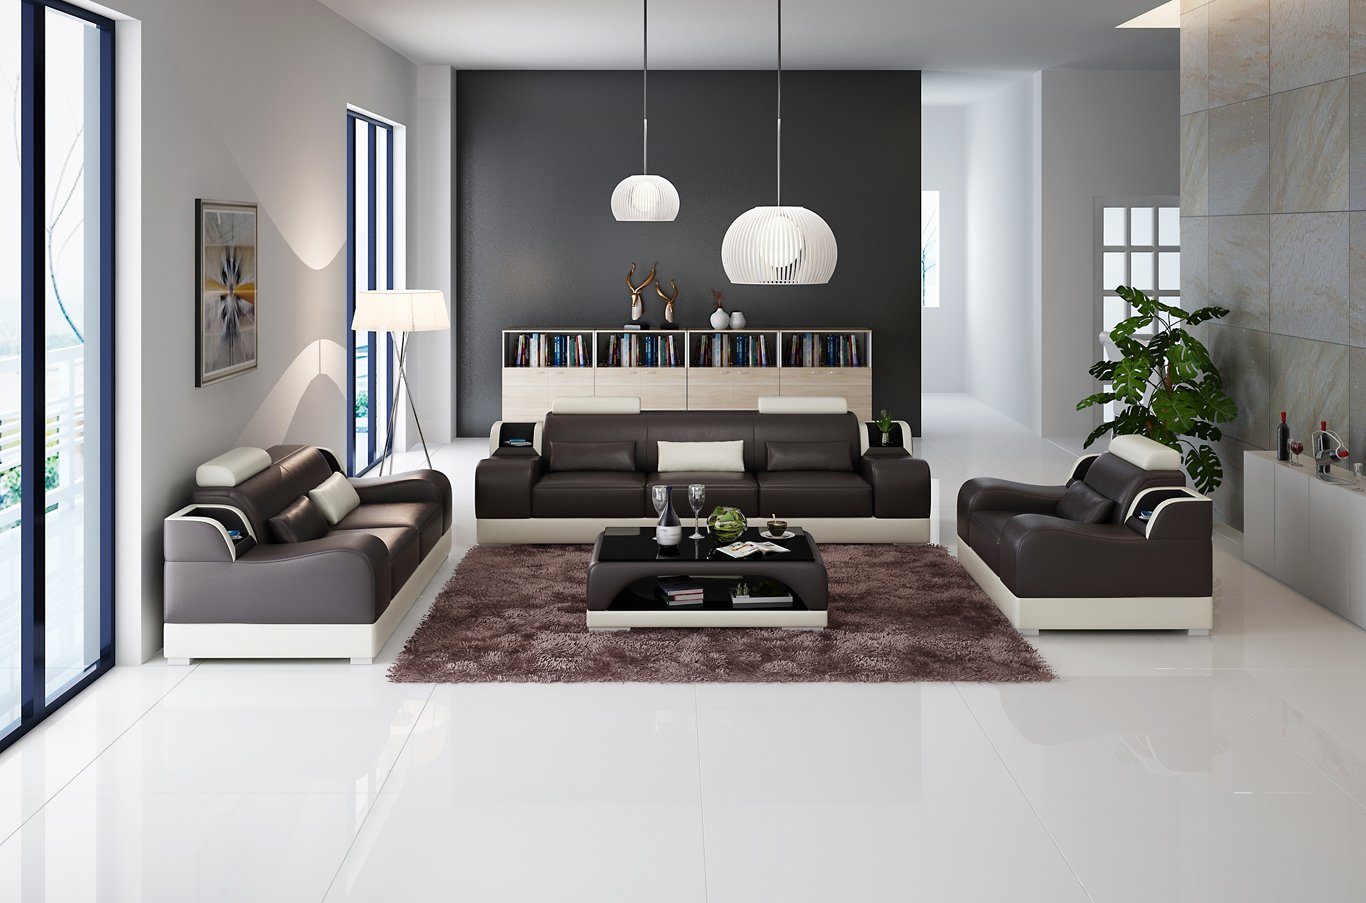 JVmoebel Sofa 3+2+2 Sitzer Set Made in Europe Modern Couch Neu, Sofa Design Couchen Polster Braun/Beige Luxus